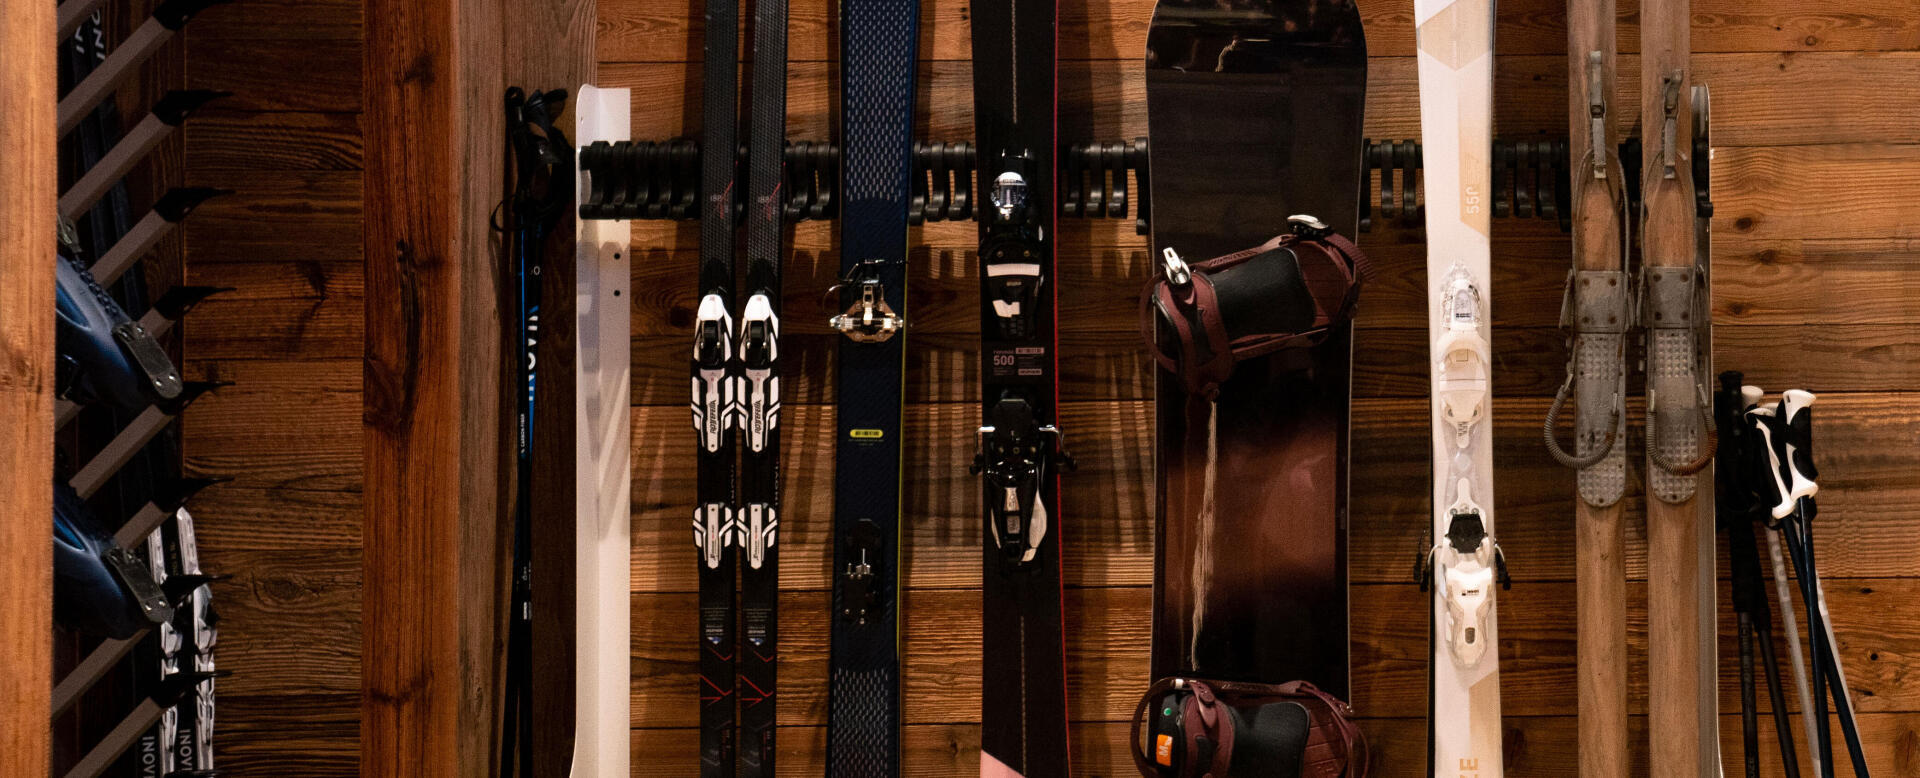 Comment ranger ses skis en fin de saison ? 